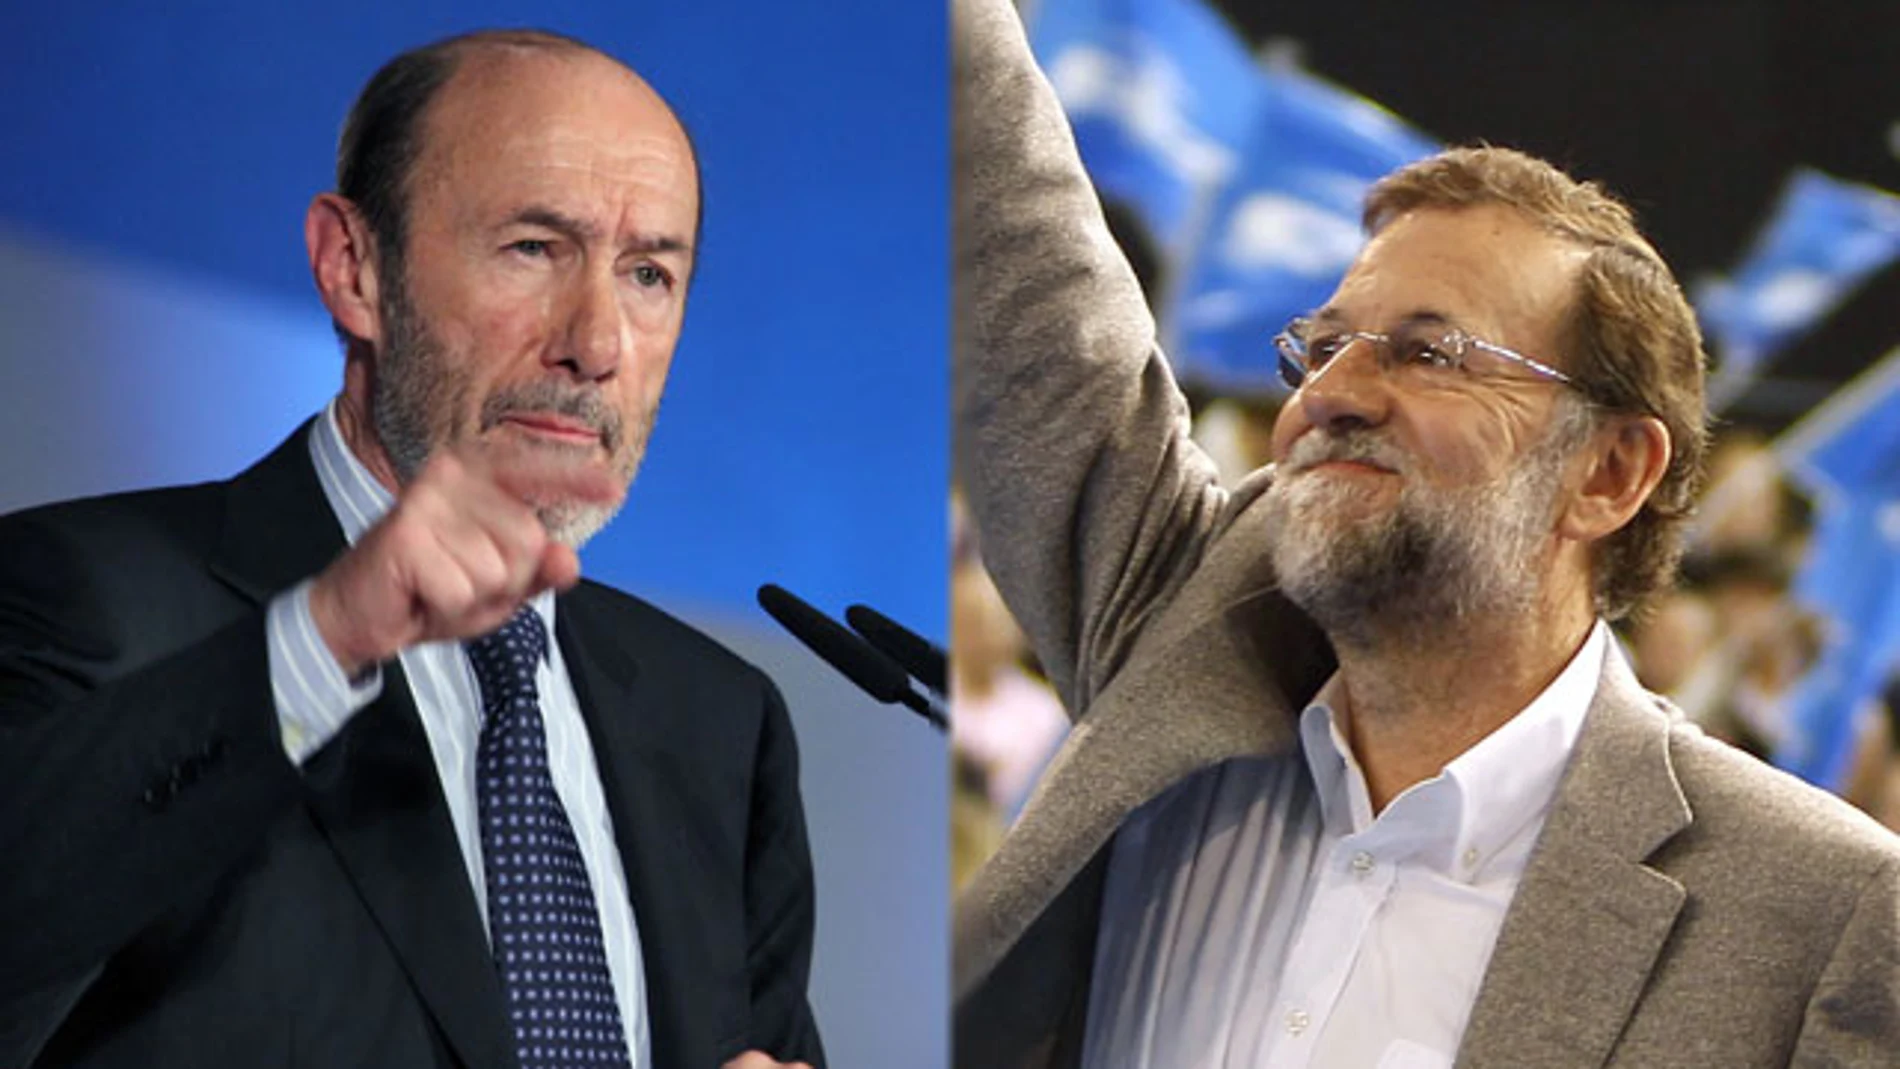 Rubalcaba y Mariano Rajoy